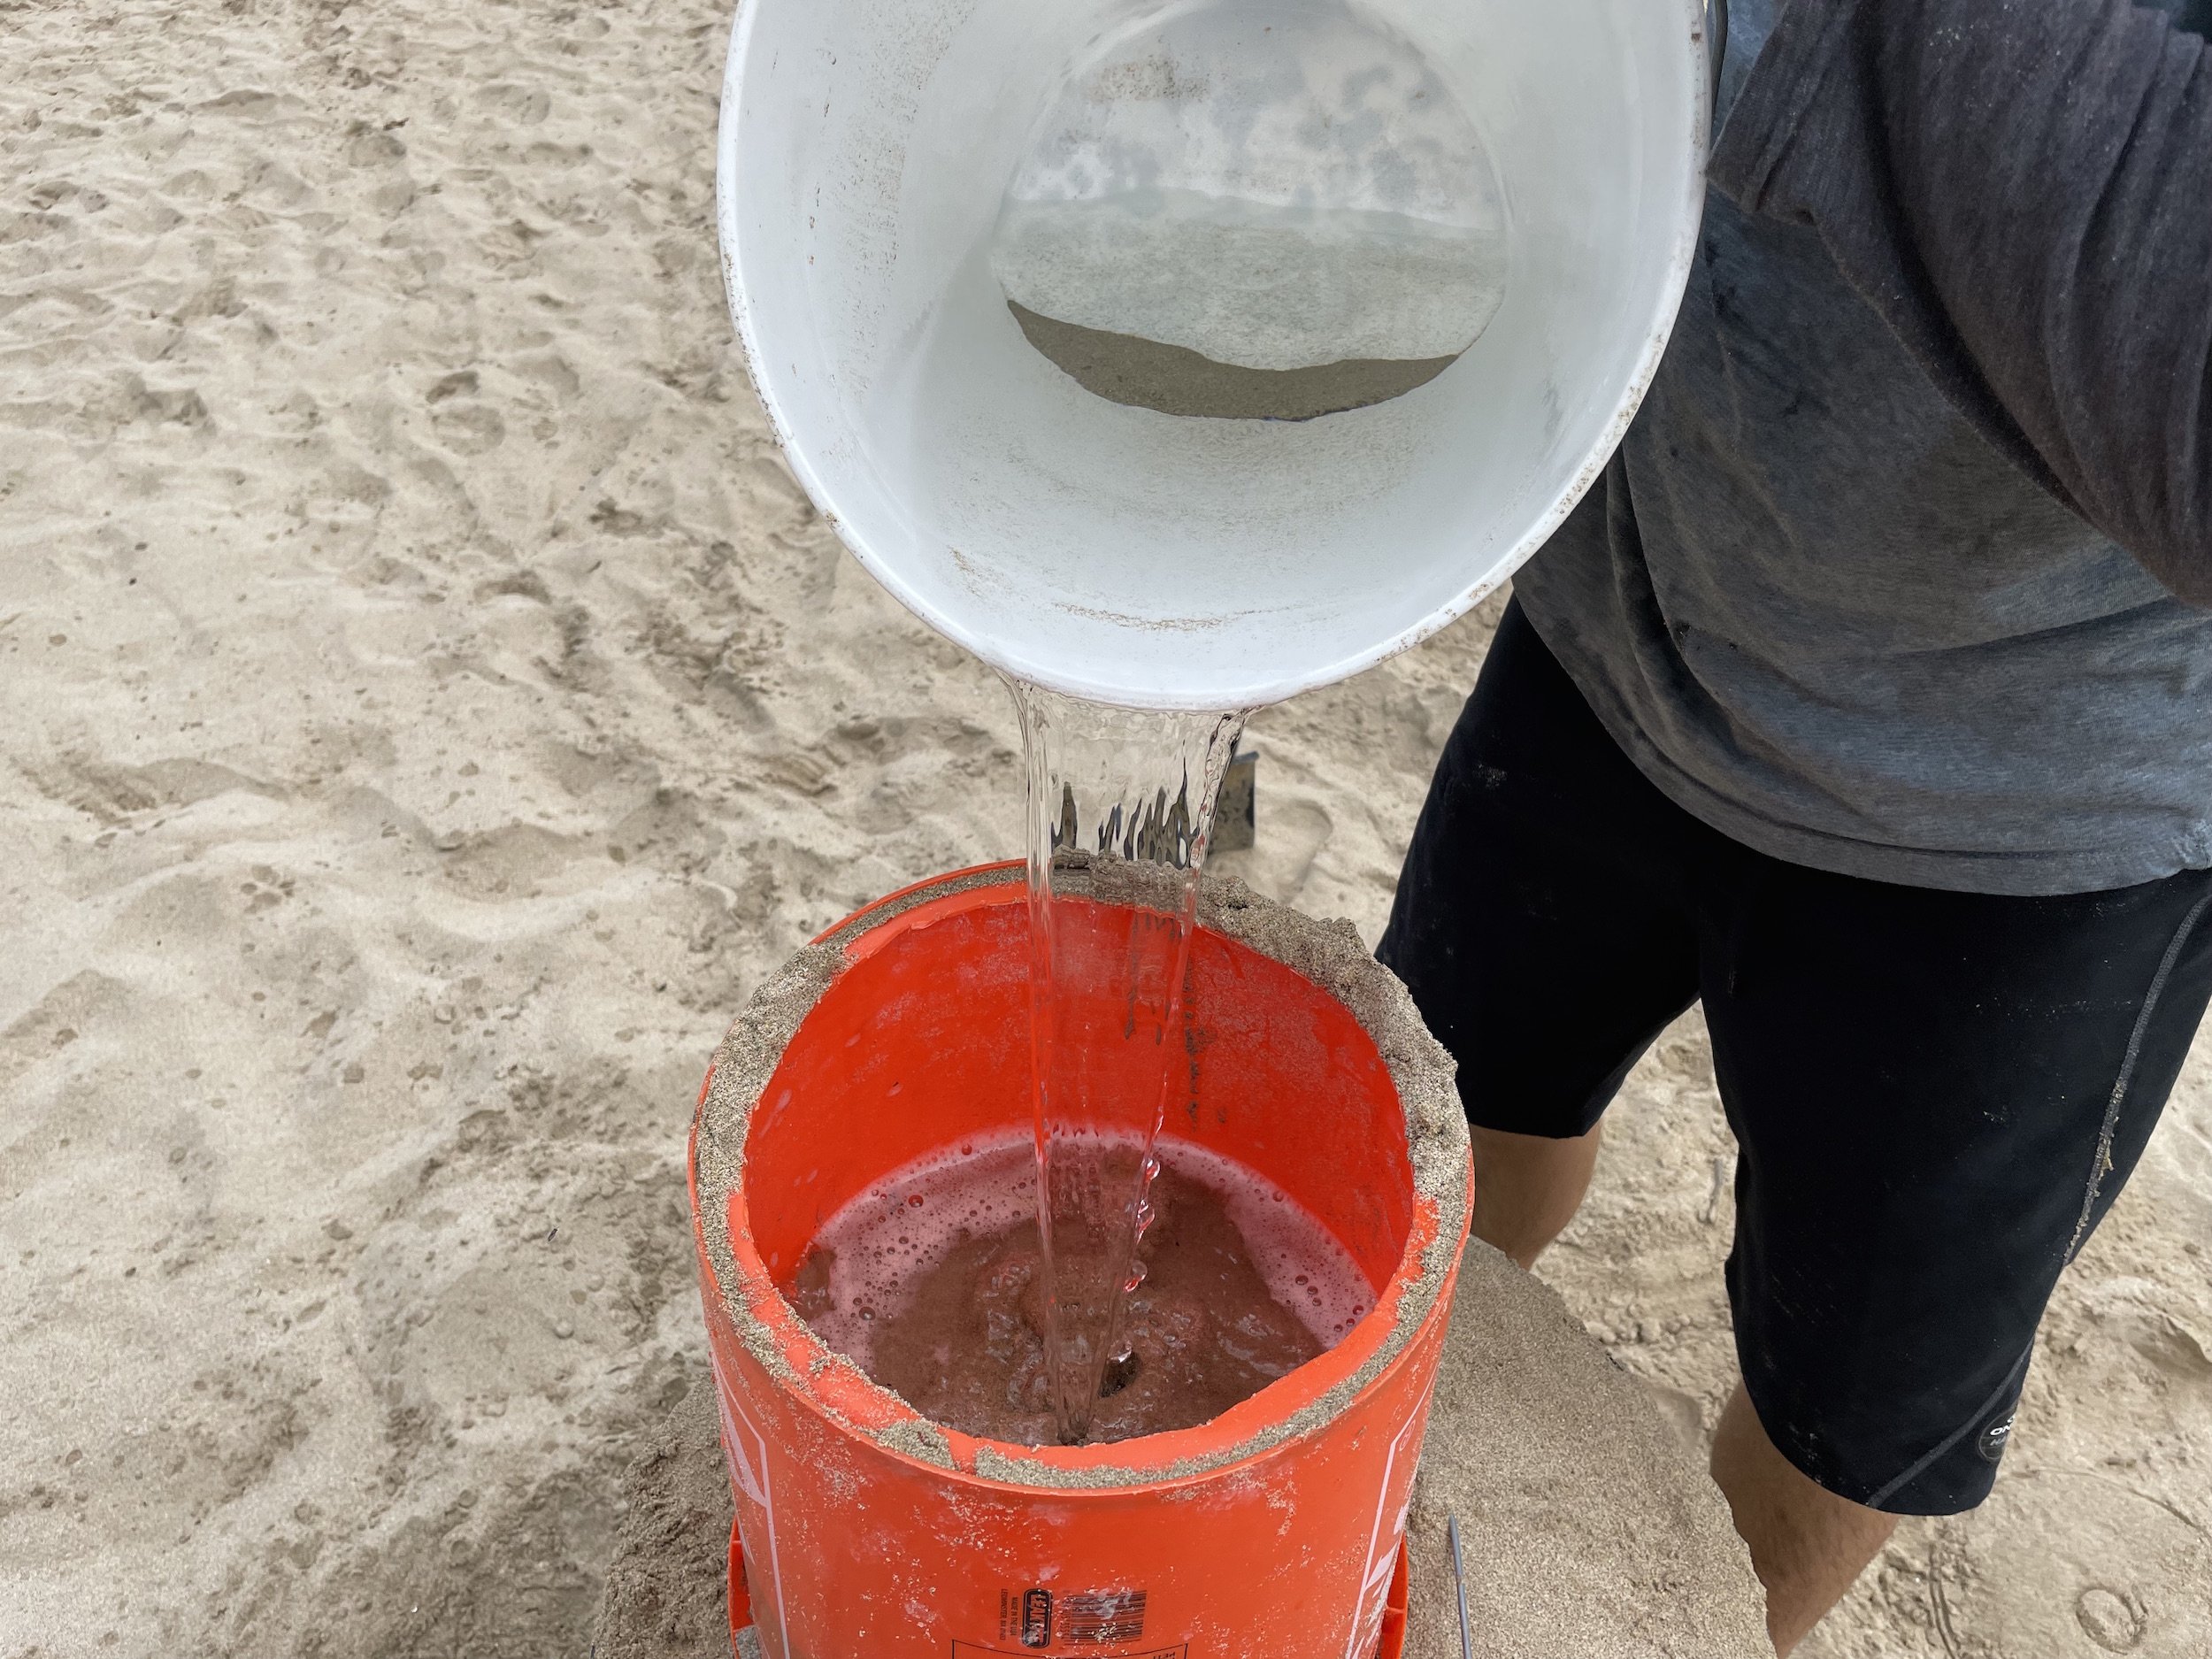 make a high sand sculpture using a 5 gallon bucket